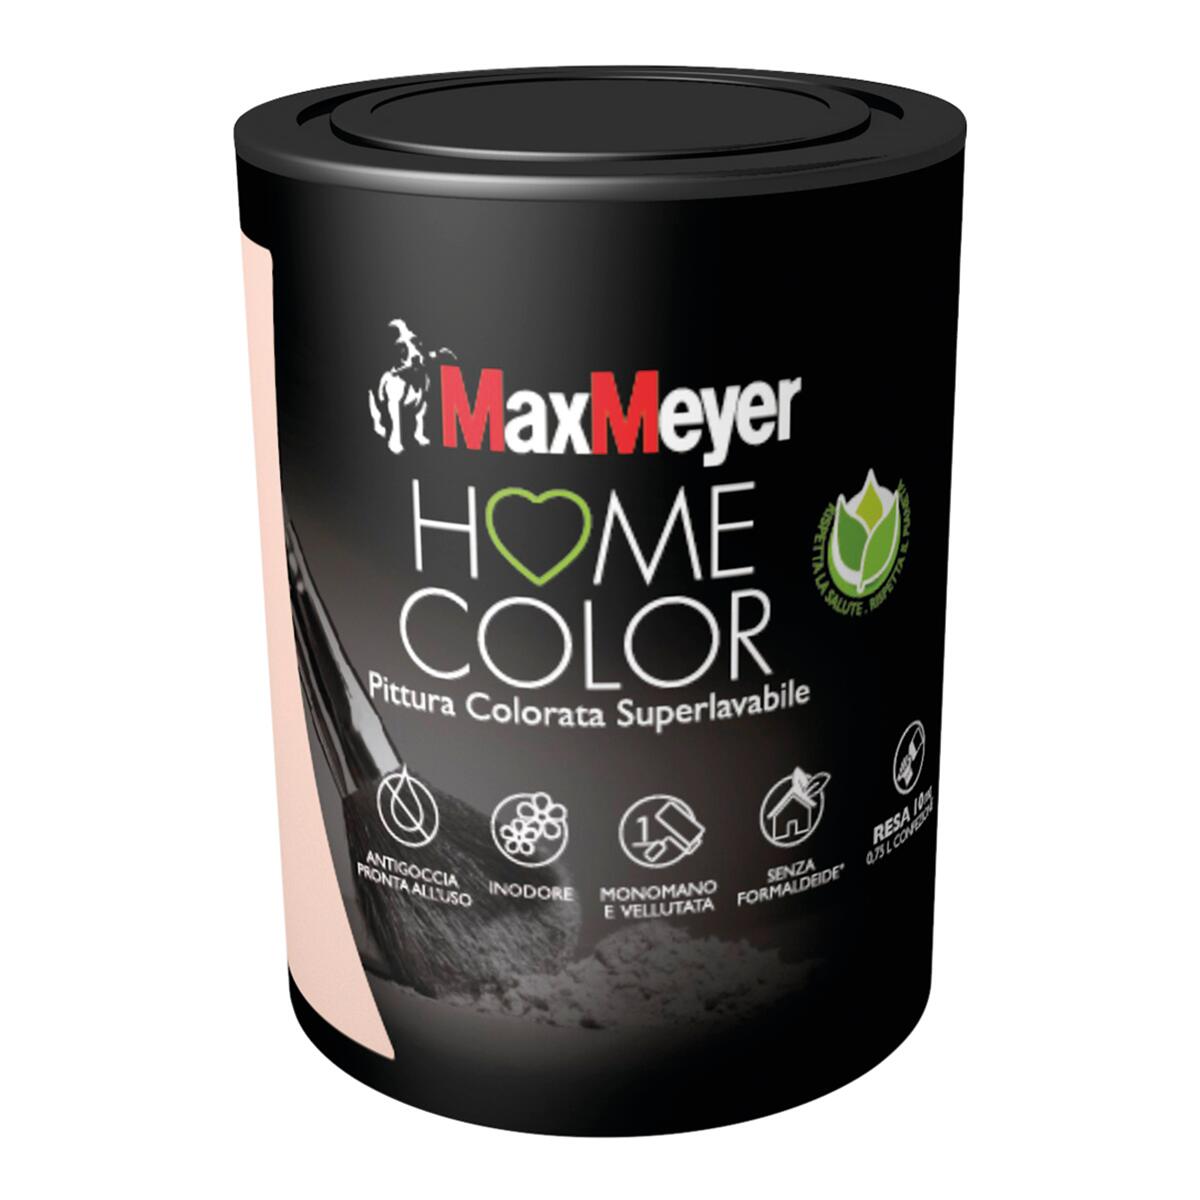 Pittura murale Super lavabile antigoccia MAX MEYER Home Color rosa romantic 2.5 L - 2